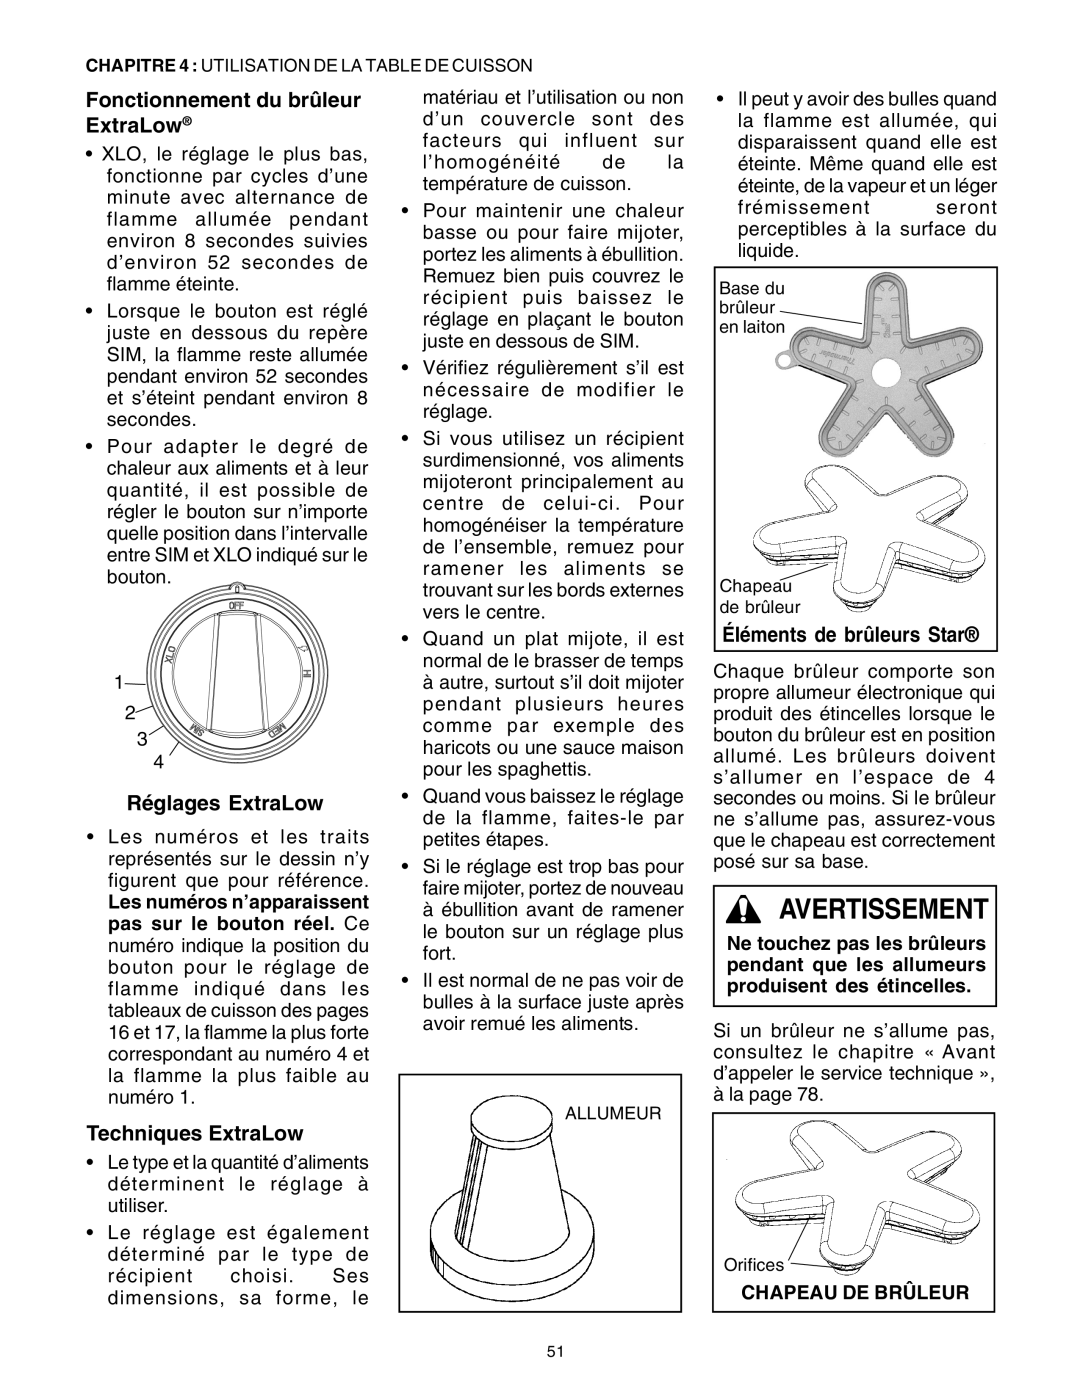 Thermador DP30 manual Fonctionnement du brûleur ExtraLow, Réglages ExtraLow, Techniques ExtraLow, Éléments de brûleurs Star 